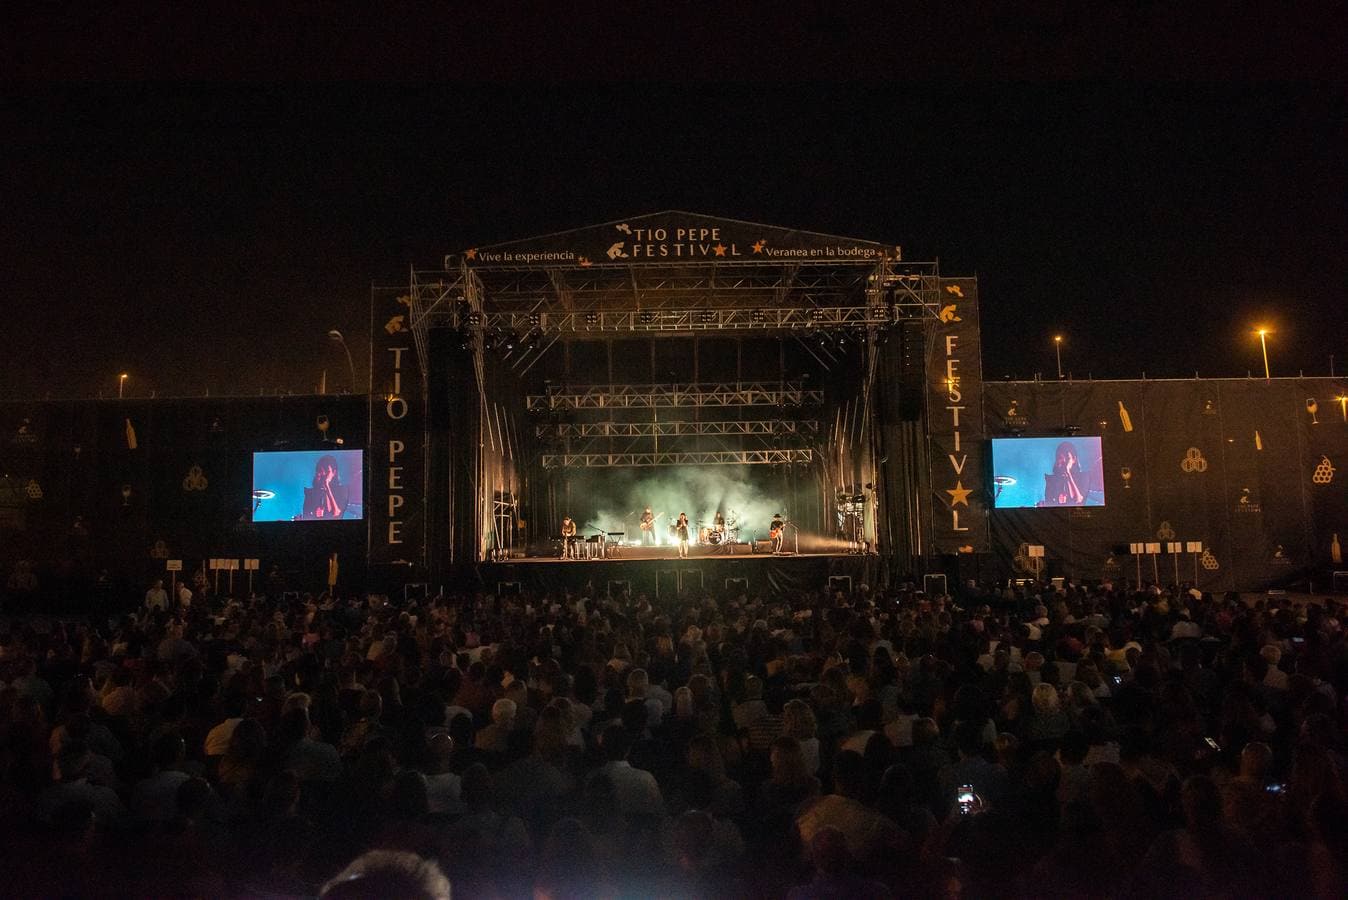 Las imágenes del concierto de la Oreja de Van Gogh en Tío Pepe Festival de Jerez